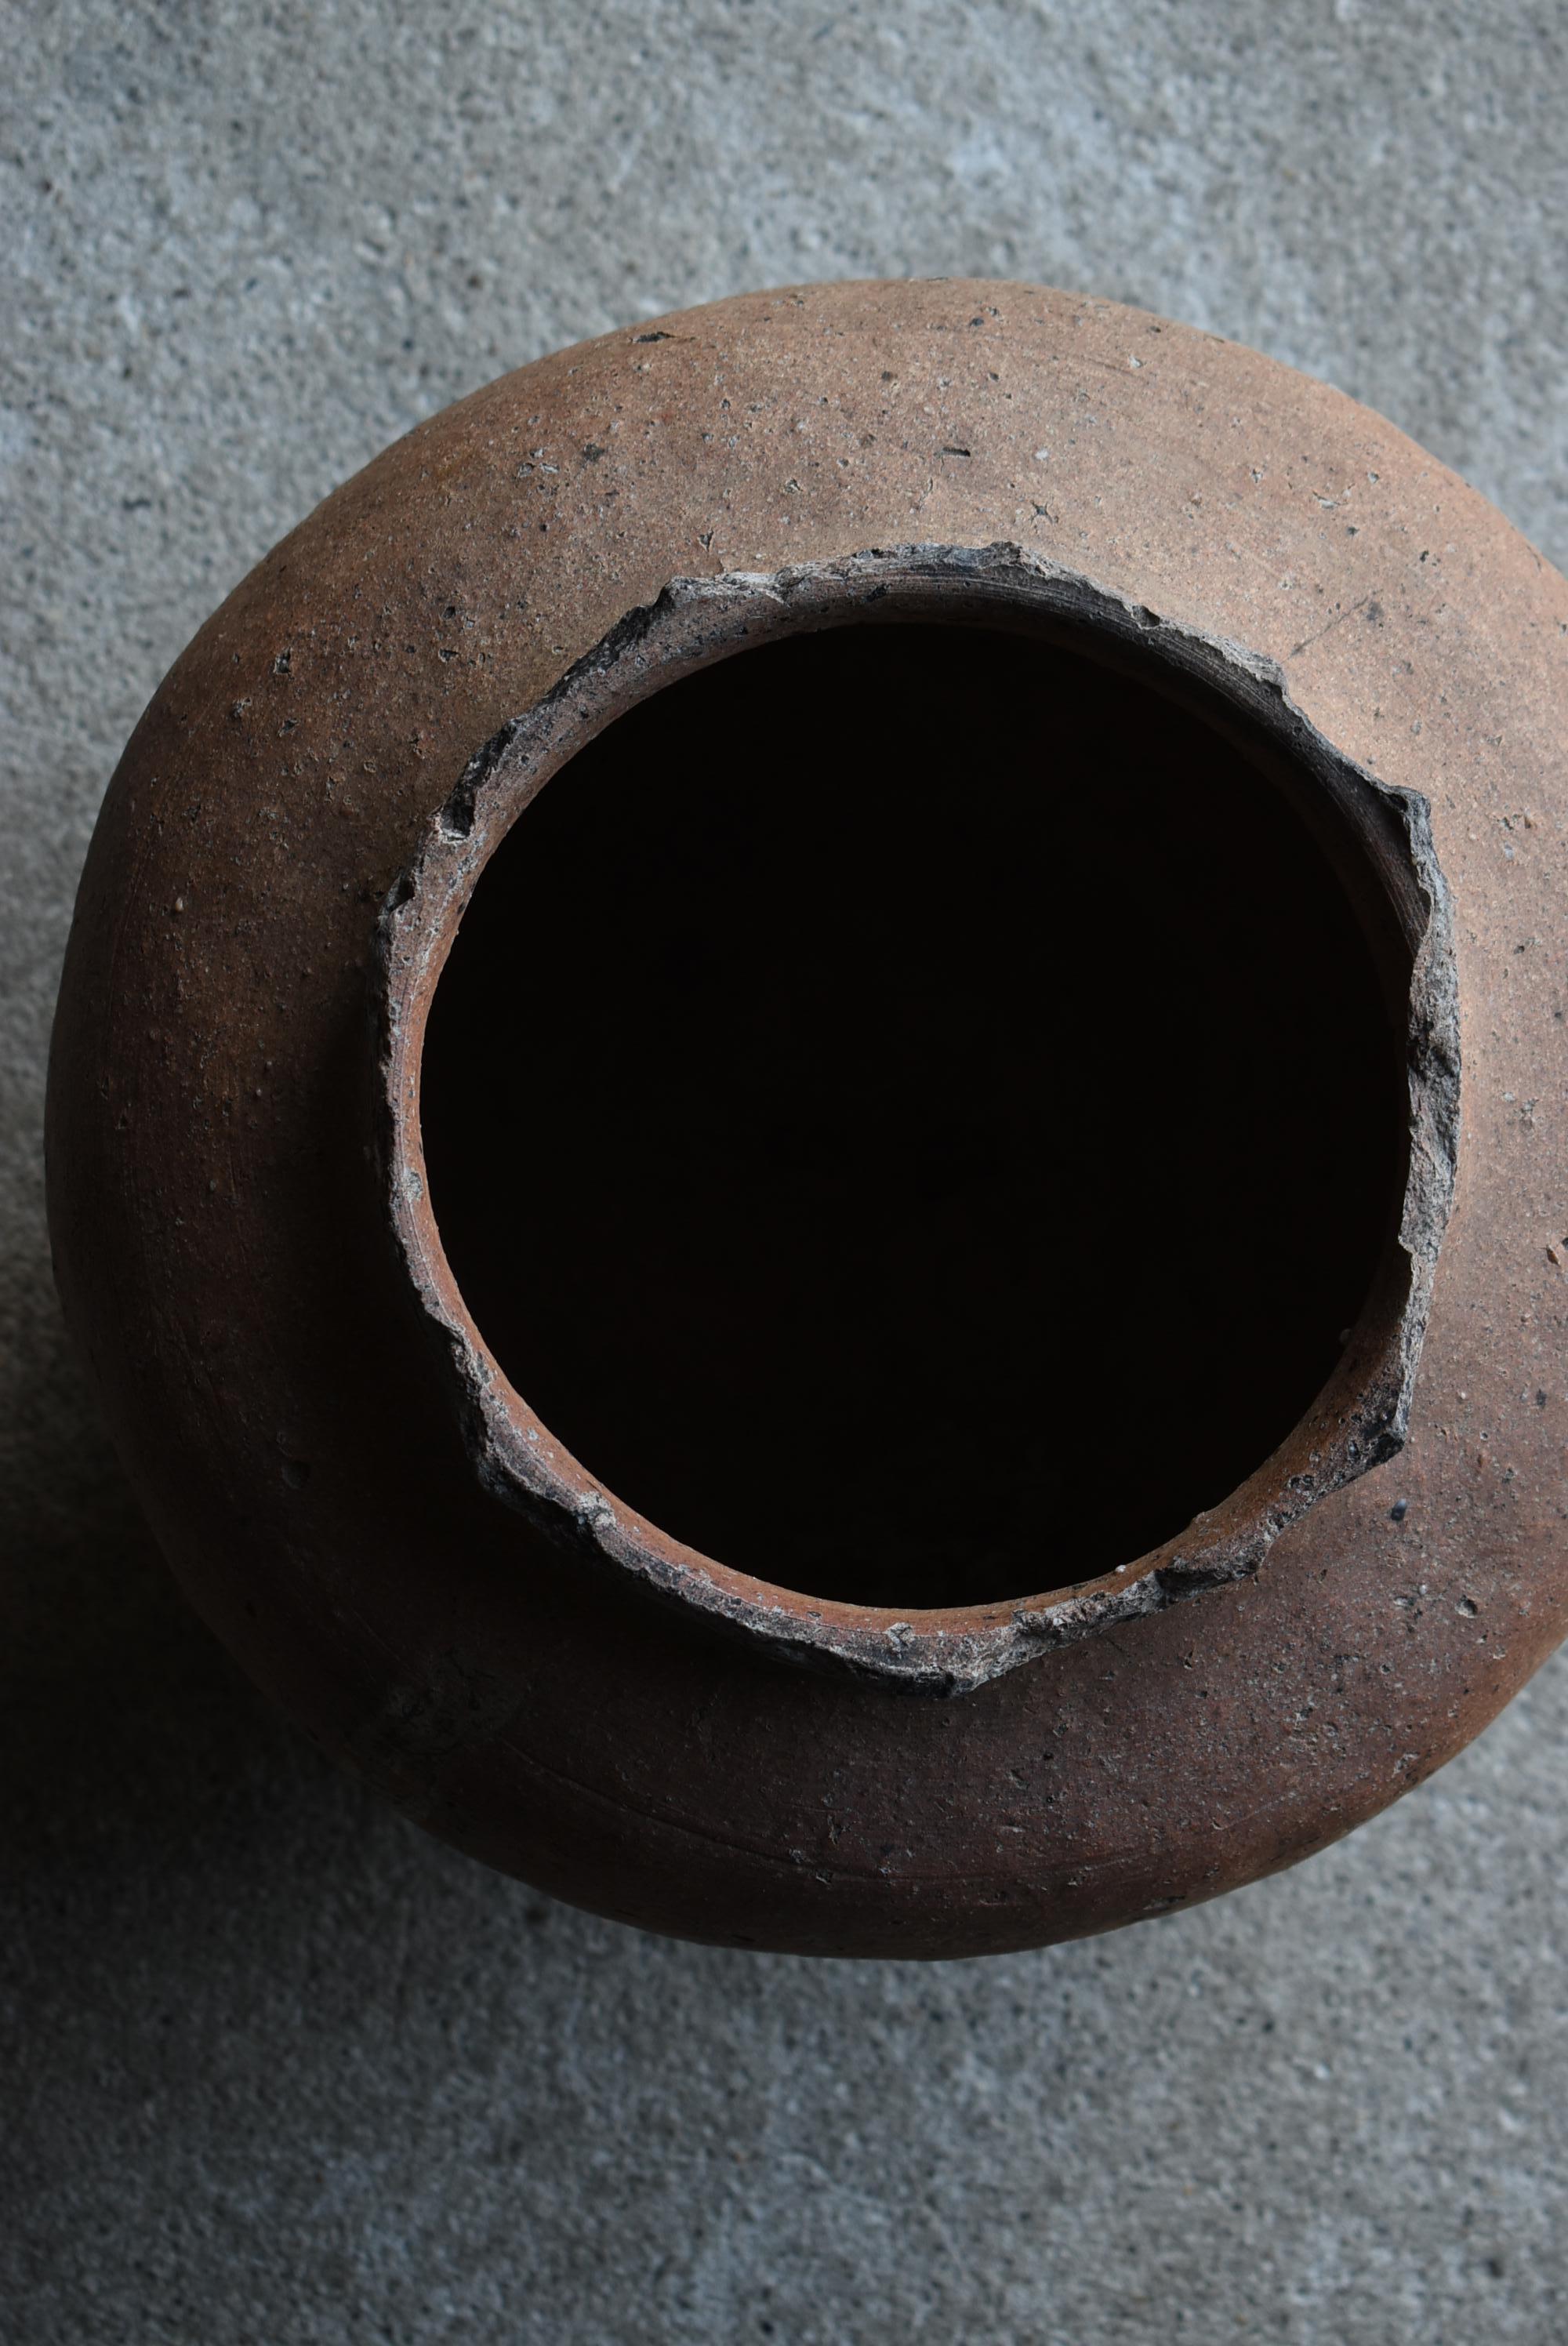 Japanese Antique Pottery Vase 1400s-1500s / Flower Vase Jar Pot Wabisabi 9